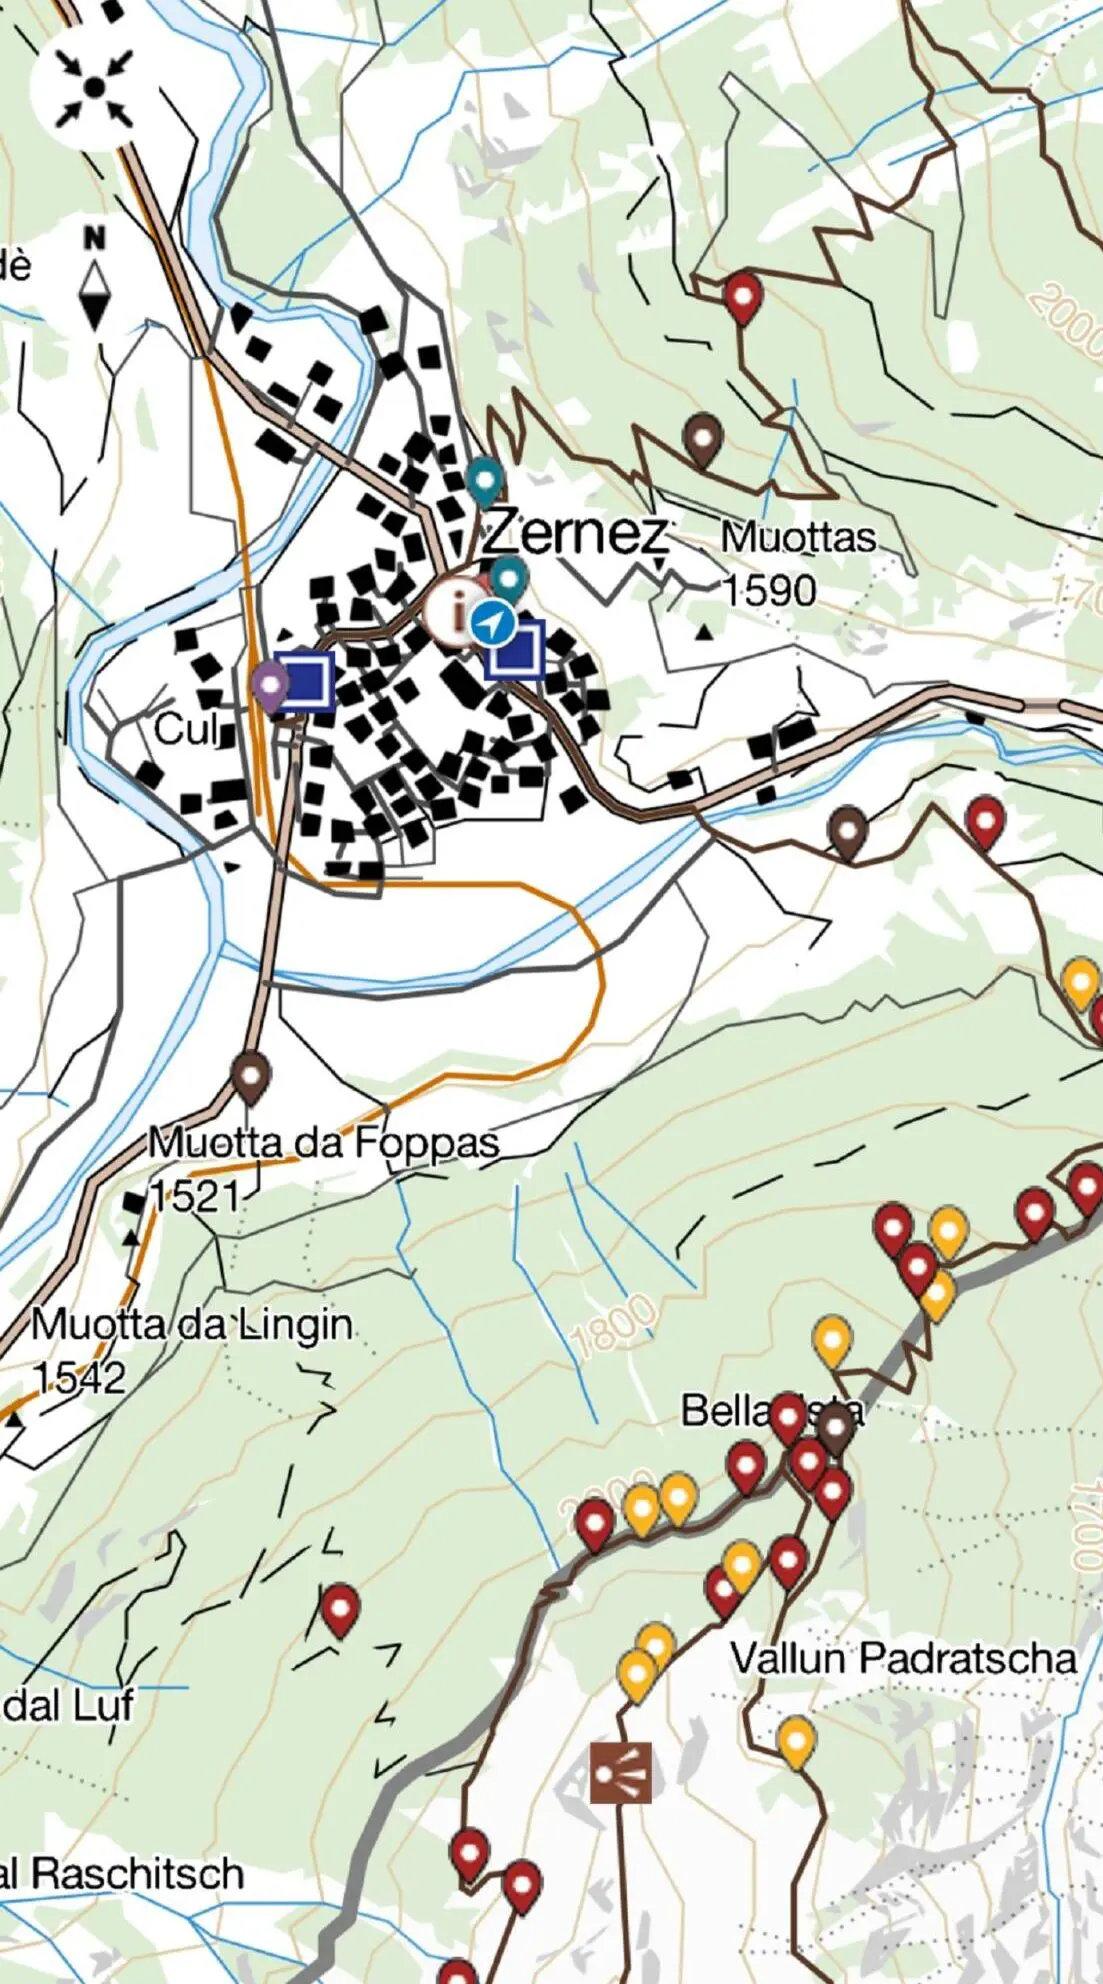 Ansicht der Karte, wie sie in der App sichtbar ist, mit GPS Punkten, welche Erklärungen liefern